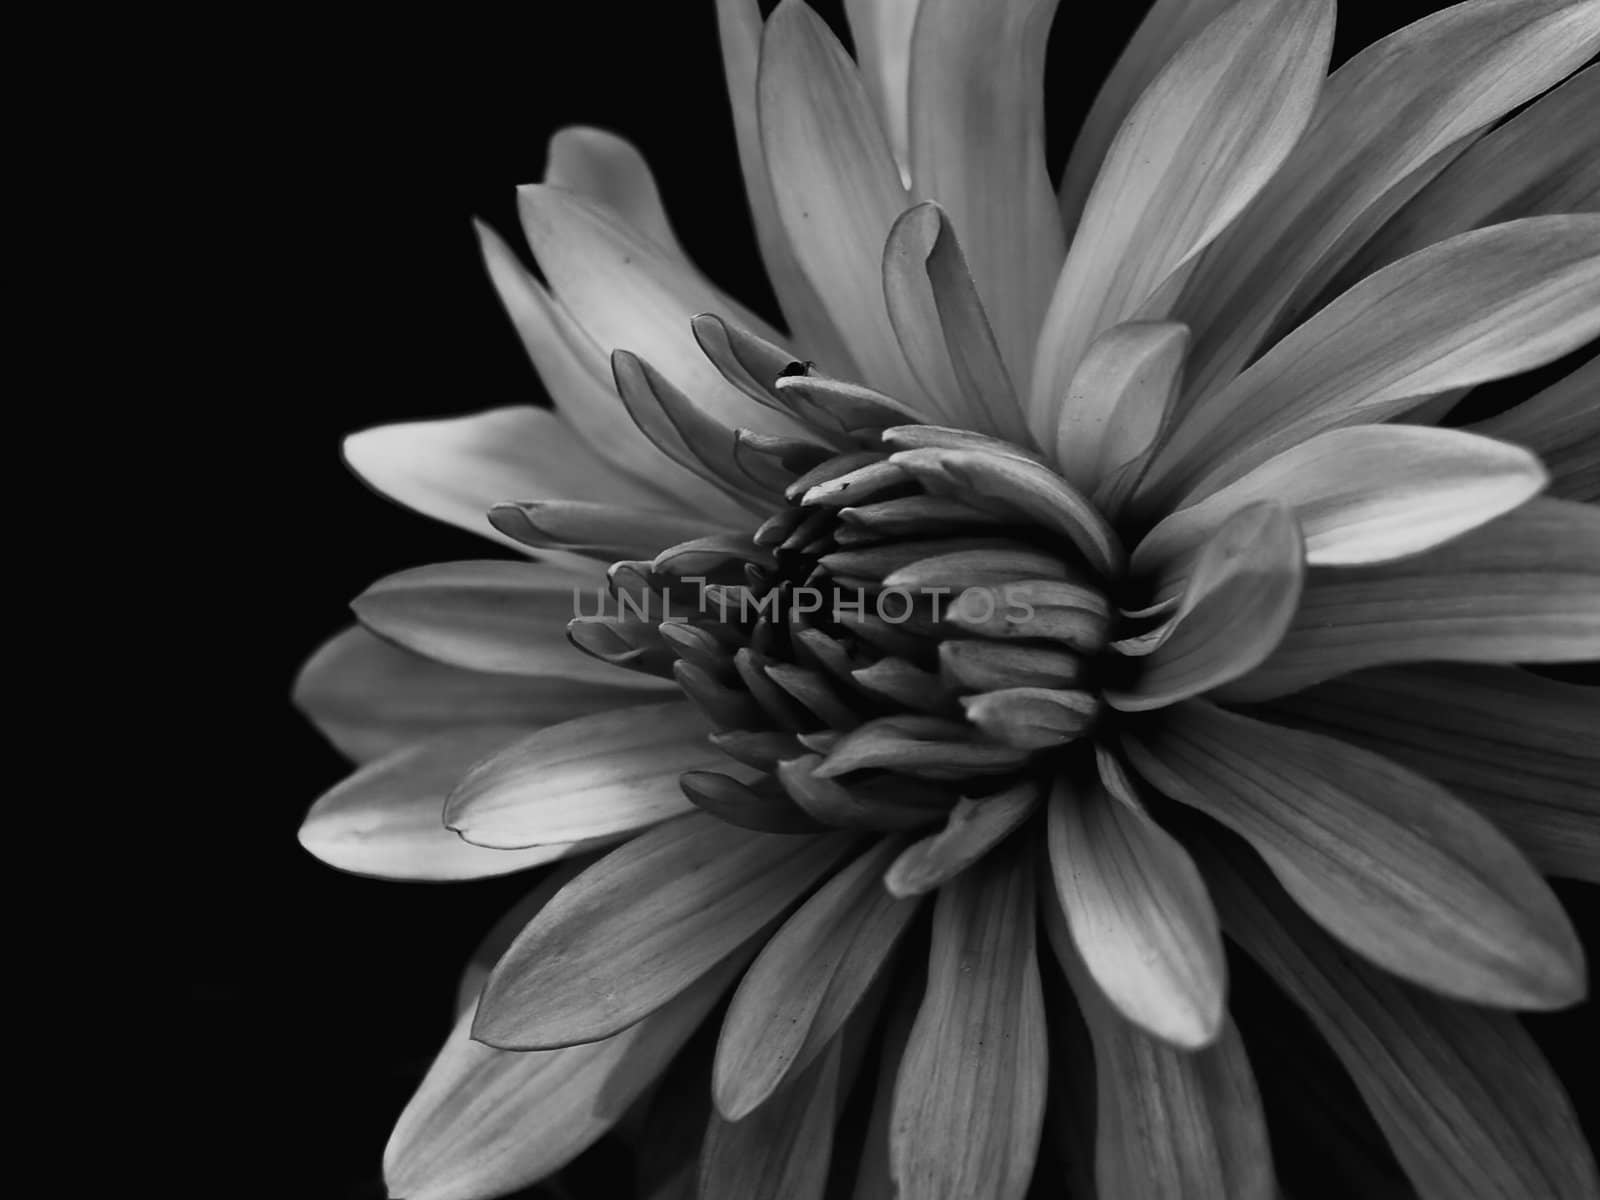 Black and white flower detail.